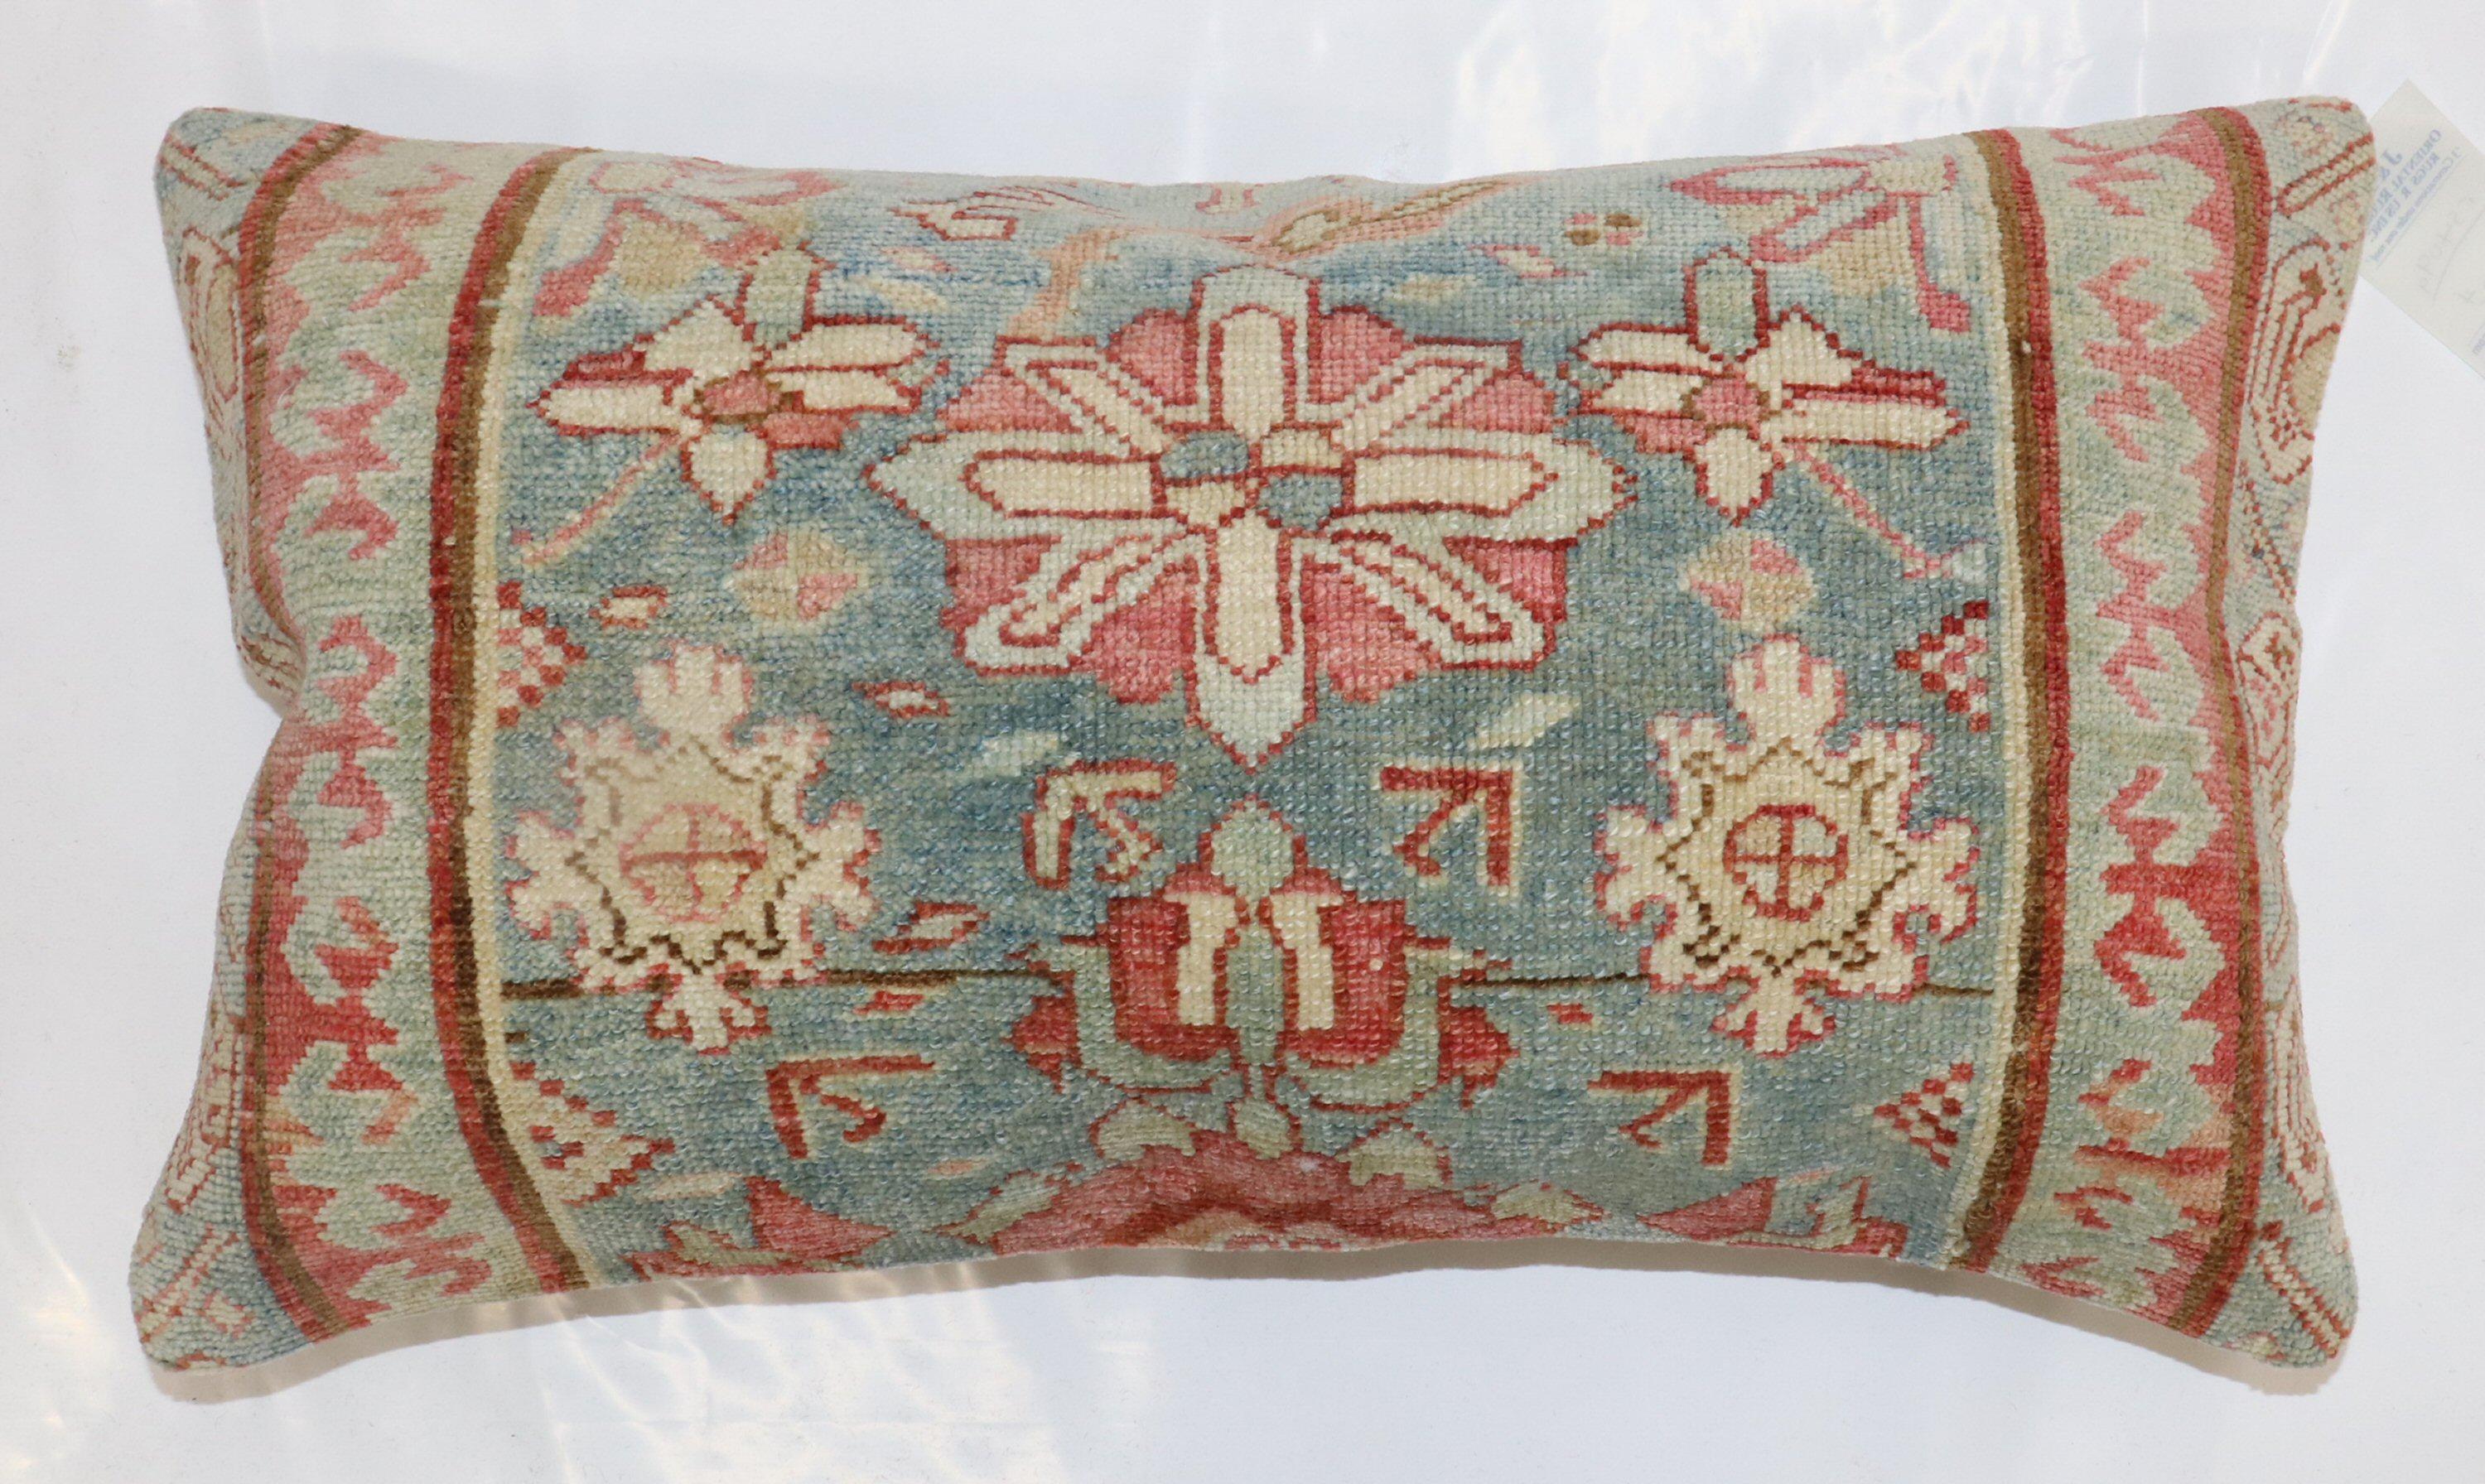 Kissen aus einem antiken Malayer-Teppich mit Baumwollrücken und Reißverschluss.

Maße: 1'4'' x 2'4''.